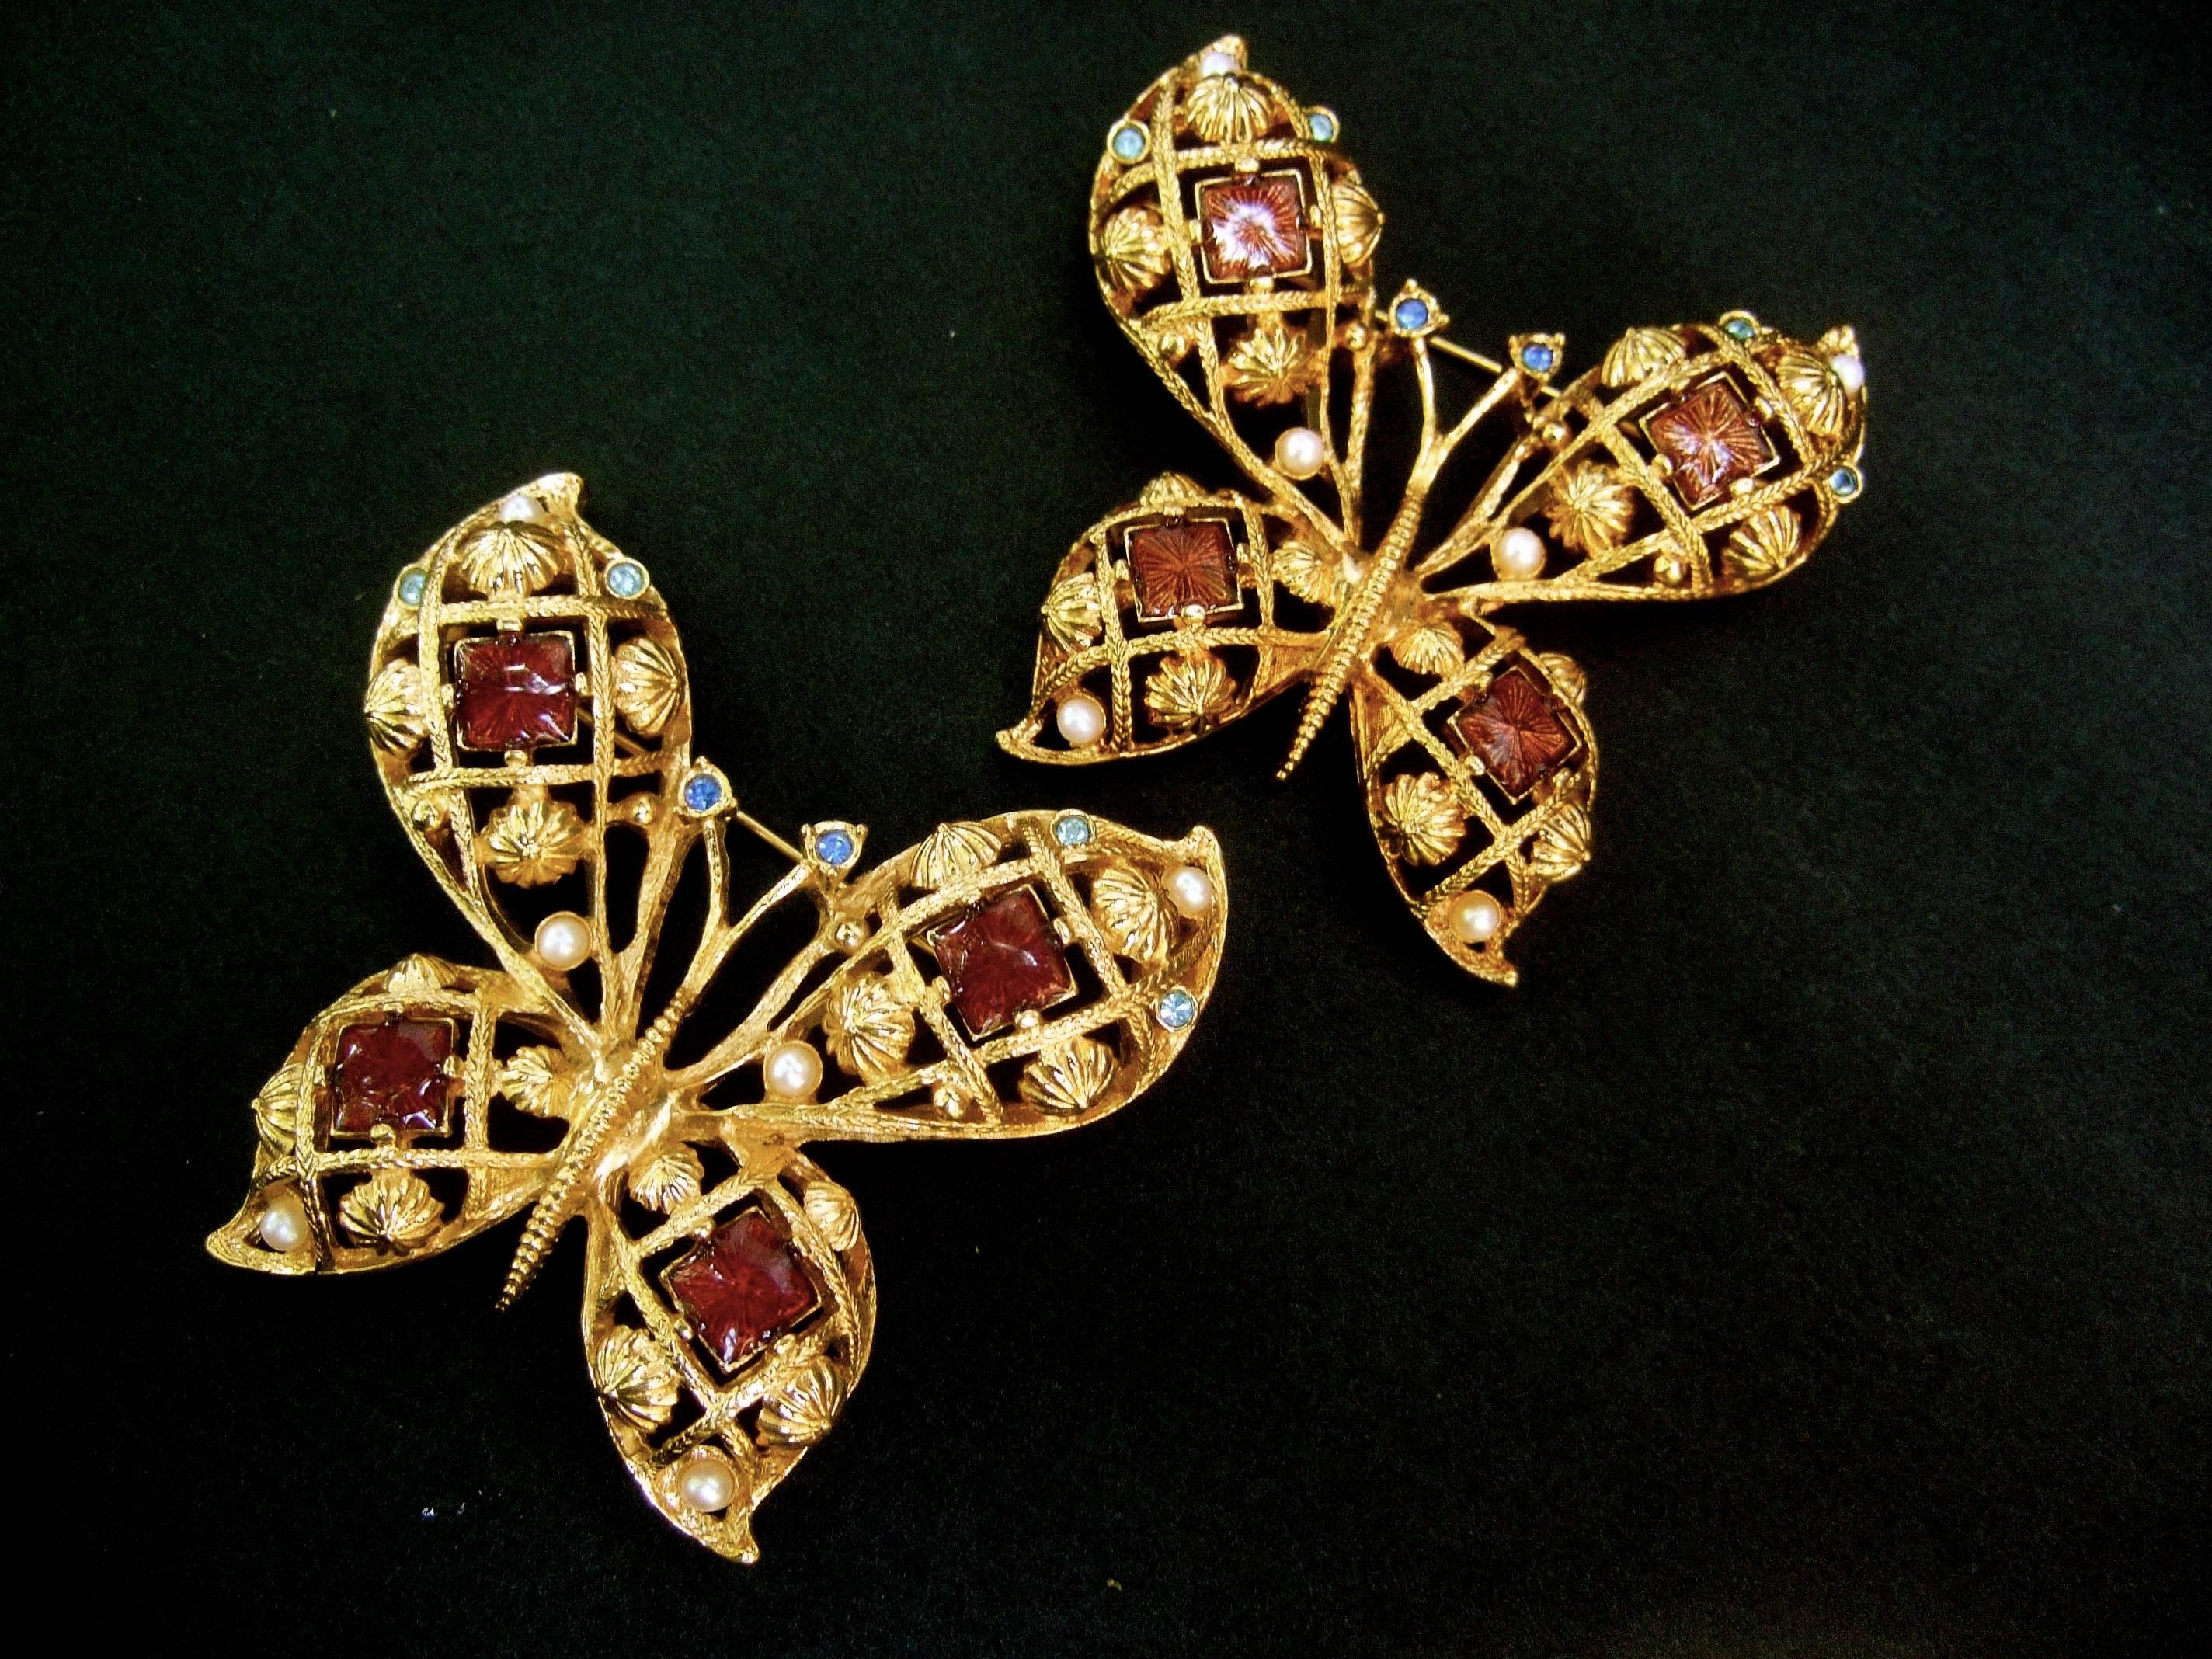 Paar juwelenbesetzte, emaillierte und vergoldete Schmetterlingsbroschen aus Metall, 1980er Jahre
Die eleganten Schmetterlinge aus goldenem Metall sind verziert 
mit Fliesen aus glänzender Emaille in gedämpftem Burgunderrot 
und helles Mokkabraun